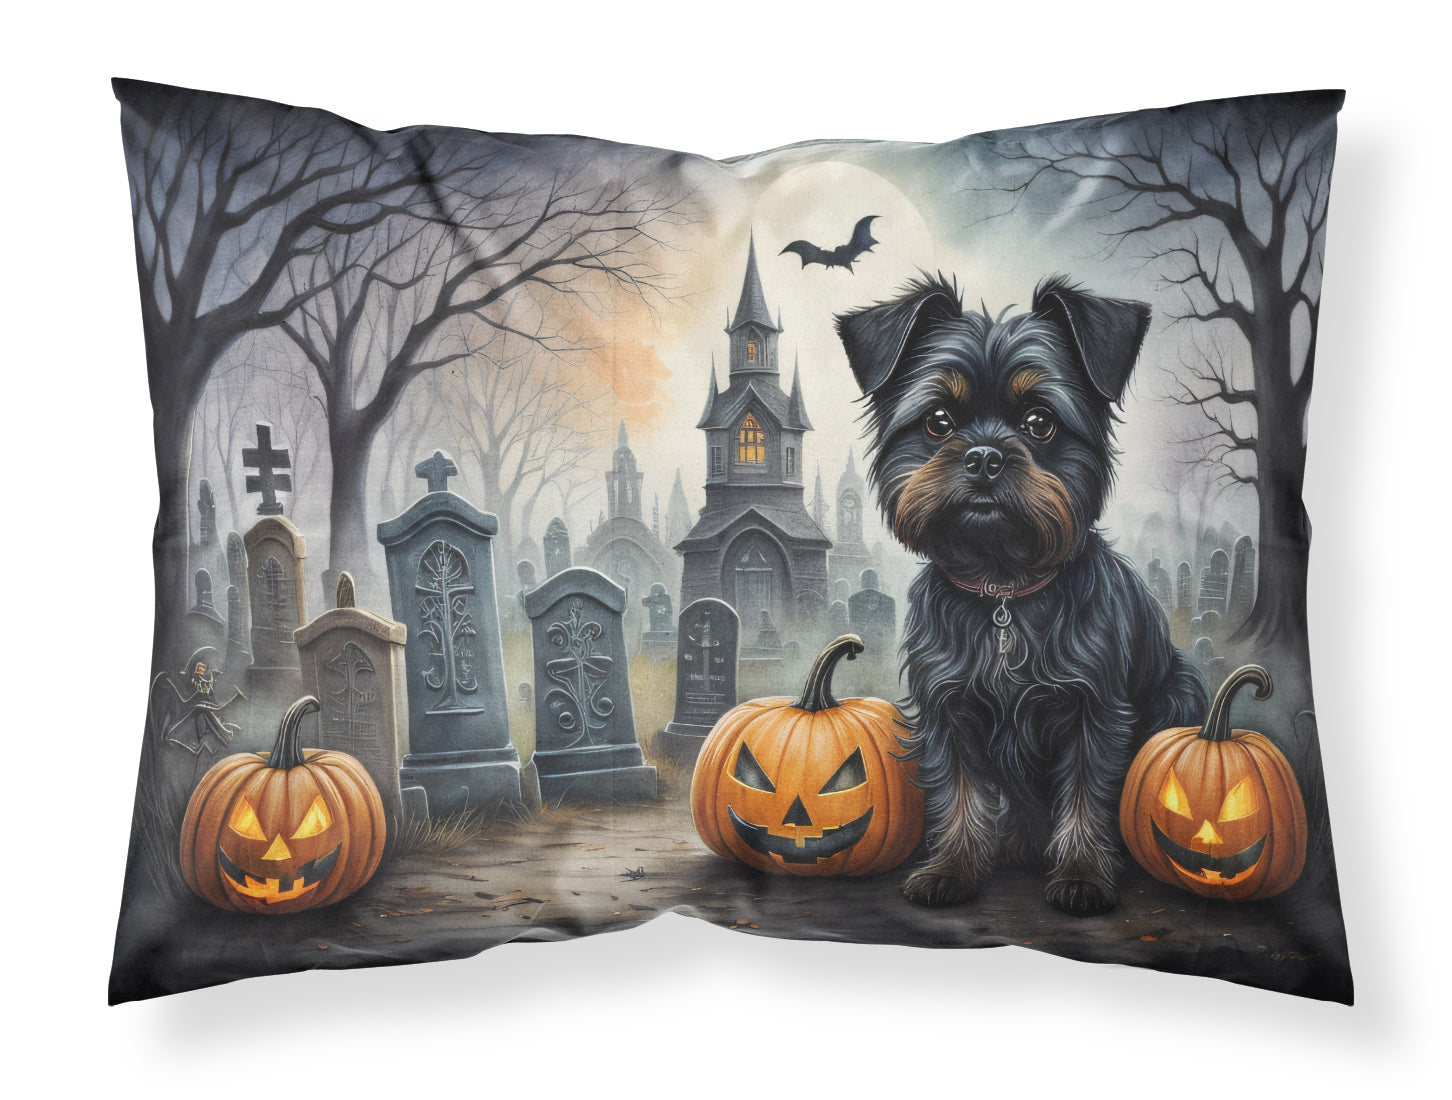 Buy this Affenpinscher Spooky Halloween Fabric Standard Pillowcase